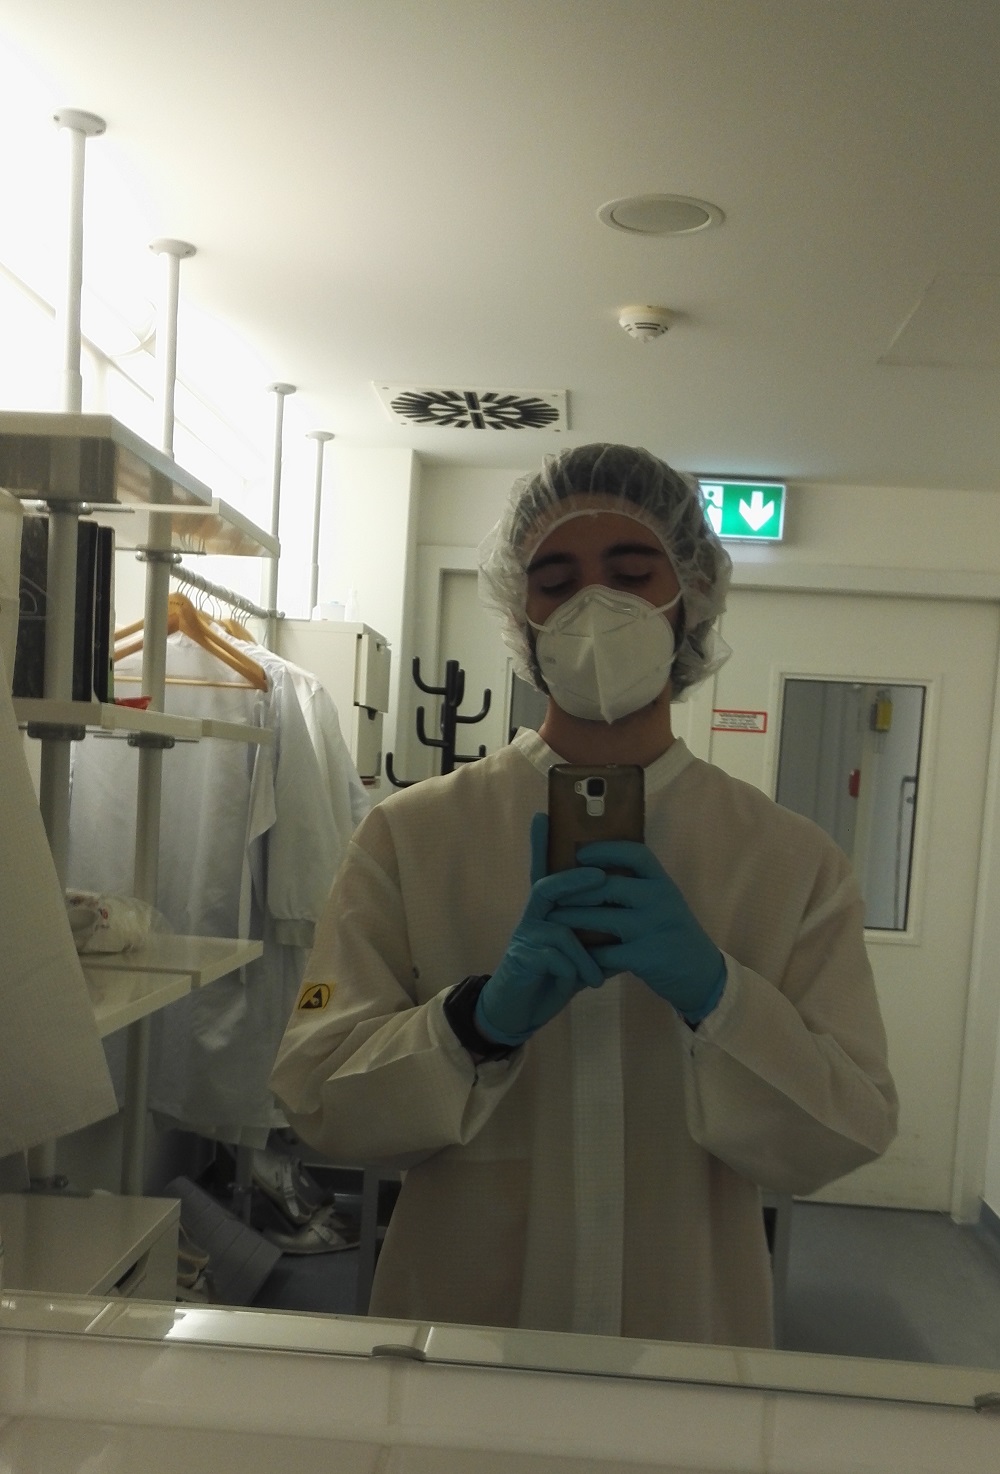 Picture: Daniel in his lab coat.